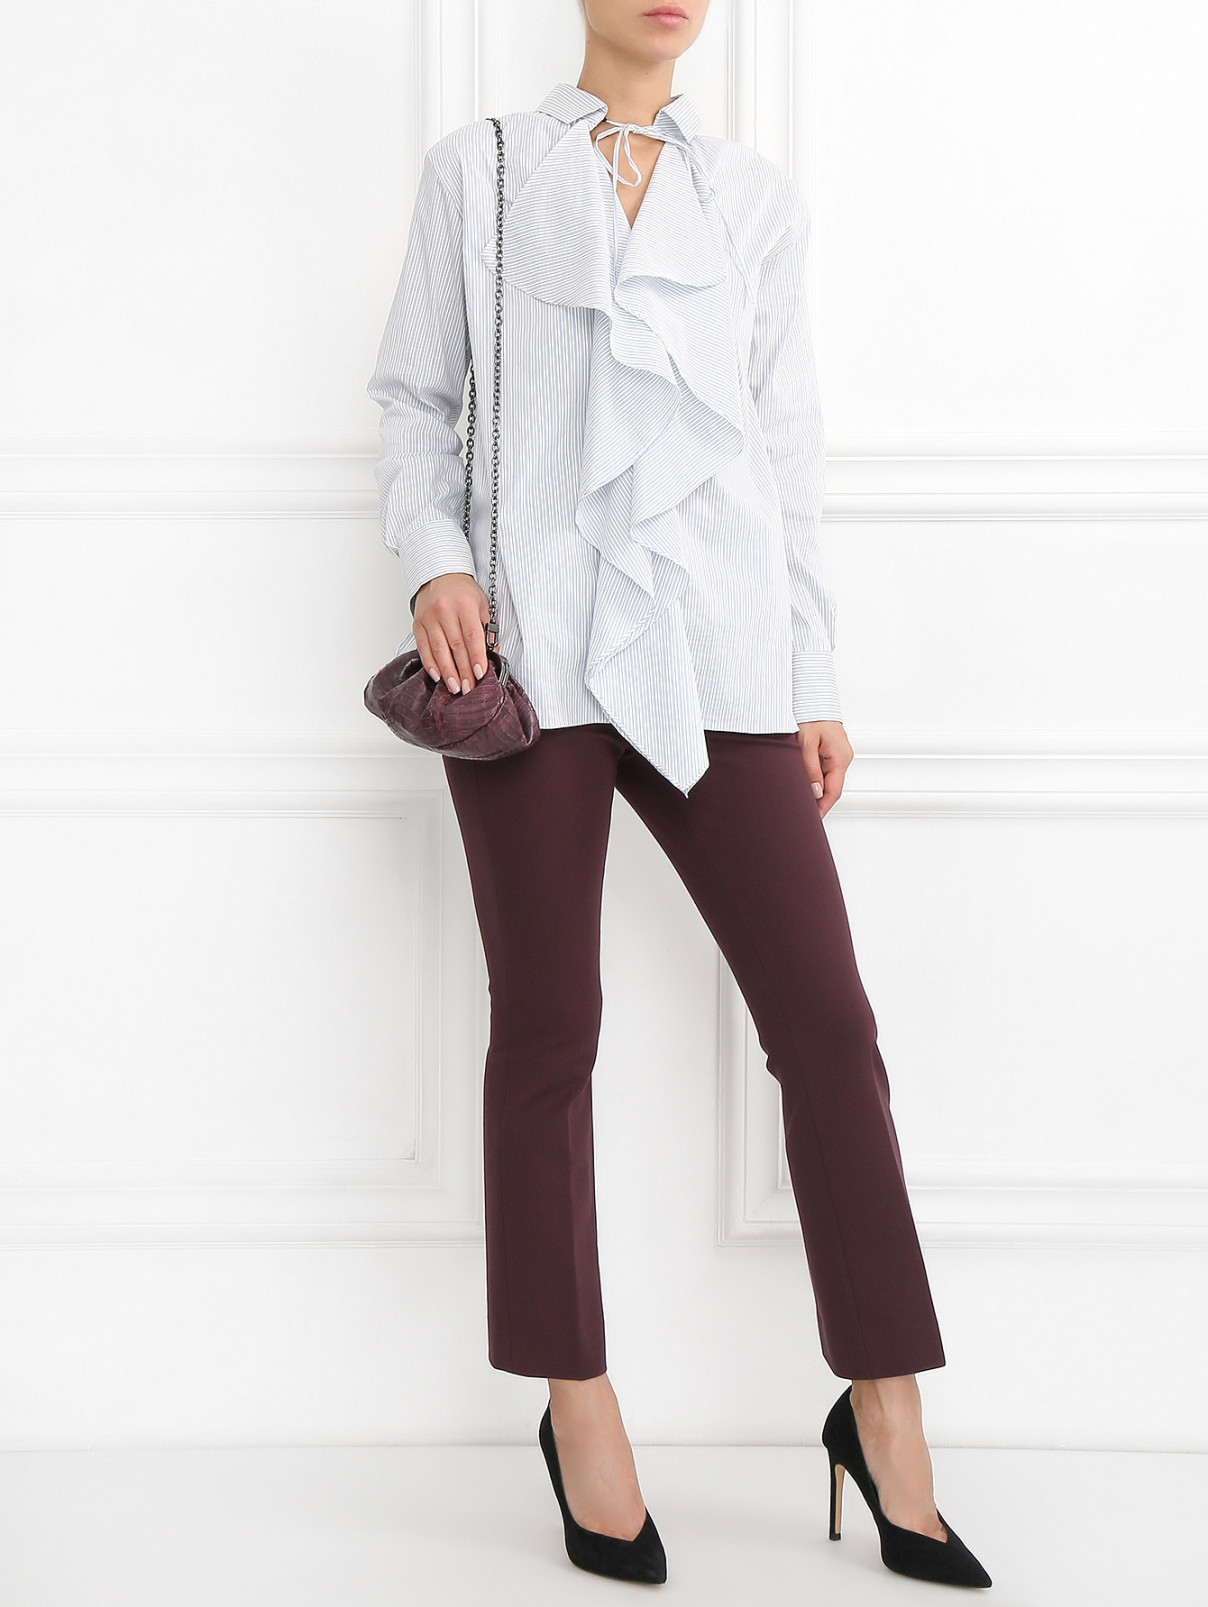 Укороченные брюки со стрелками Dorothee Schumacher  –  Модель Общий вид  – Цвет:  Фиолетовый